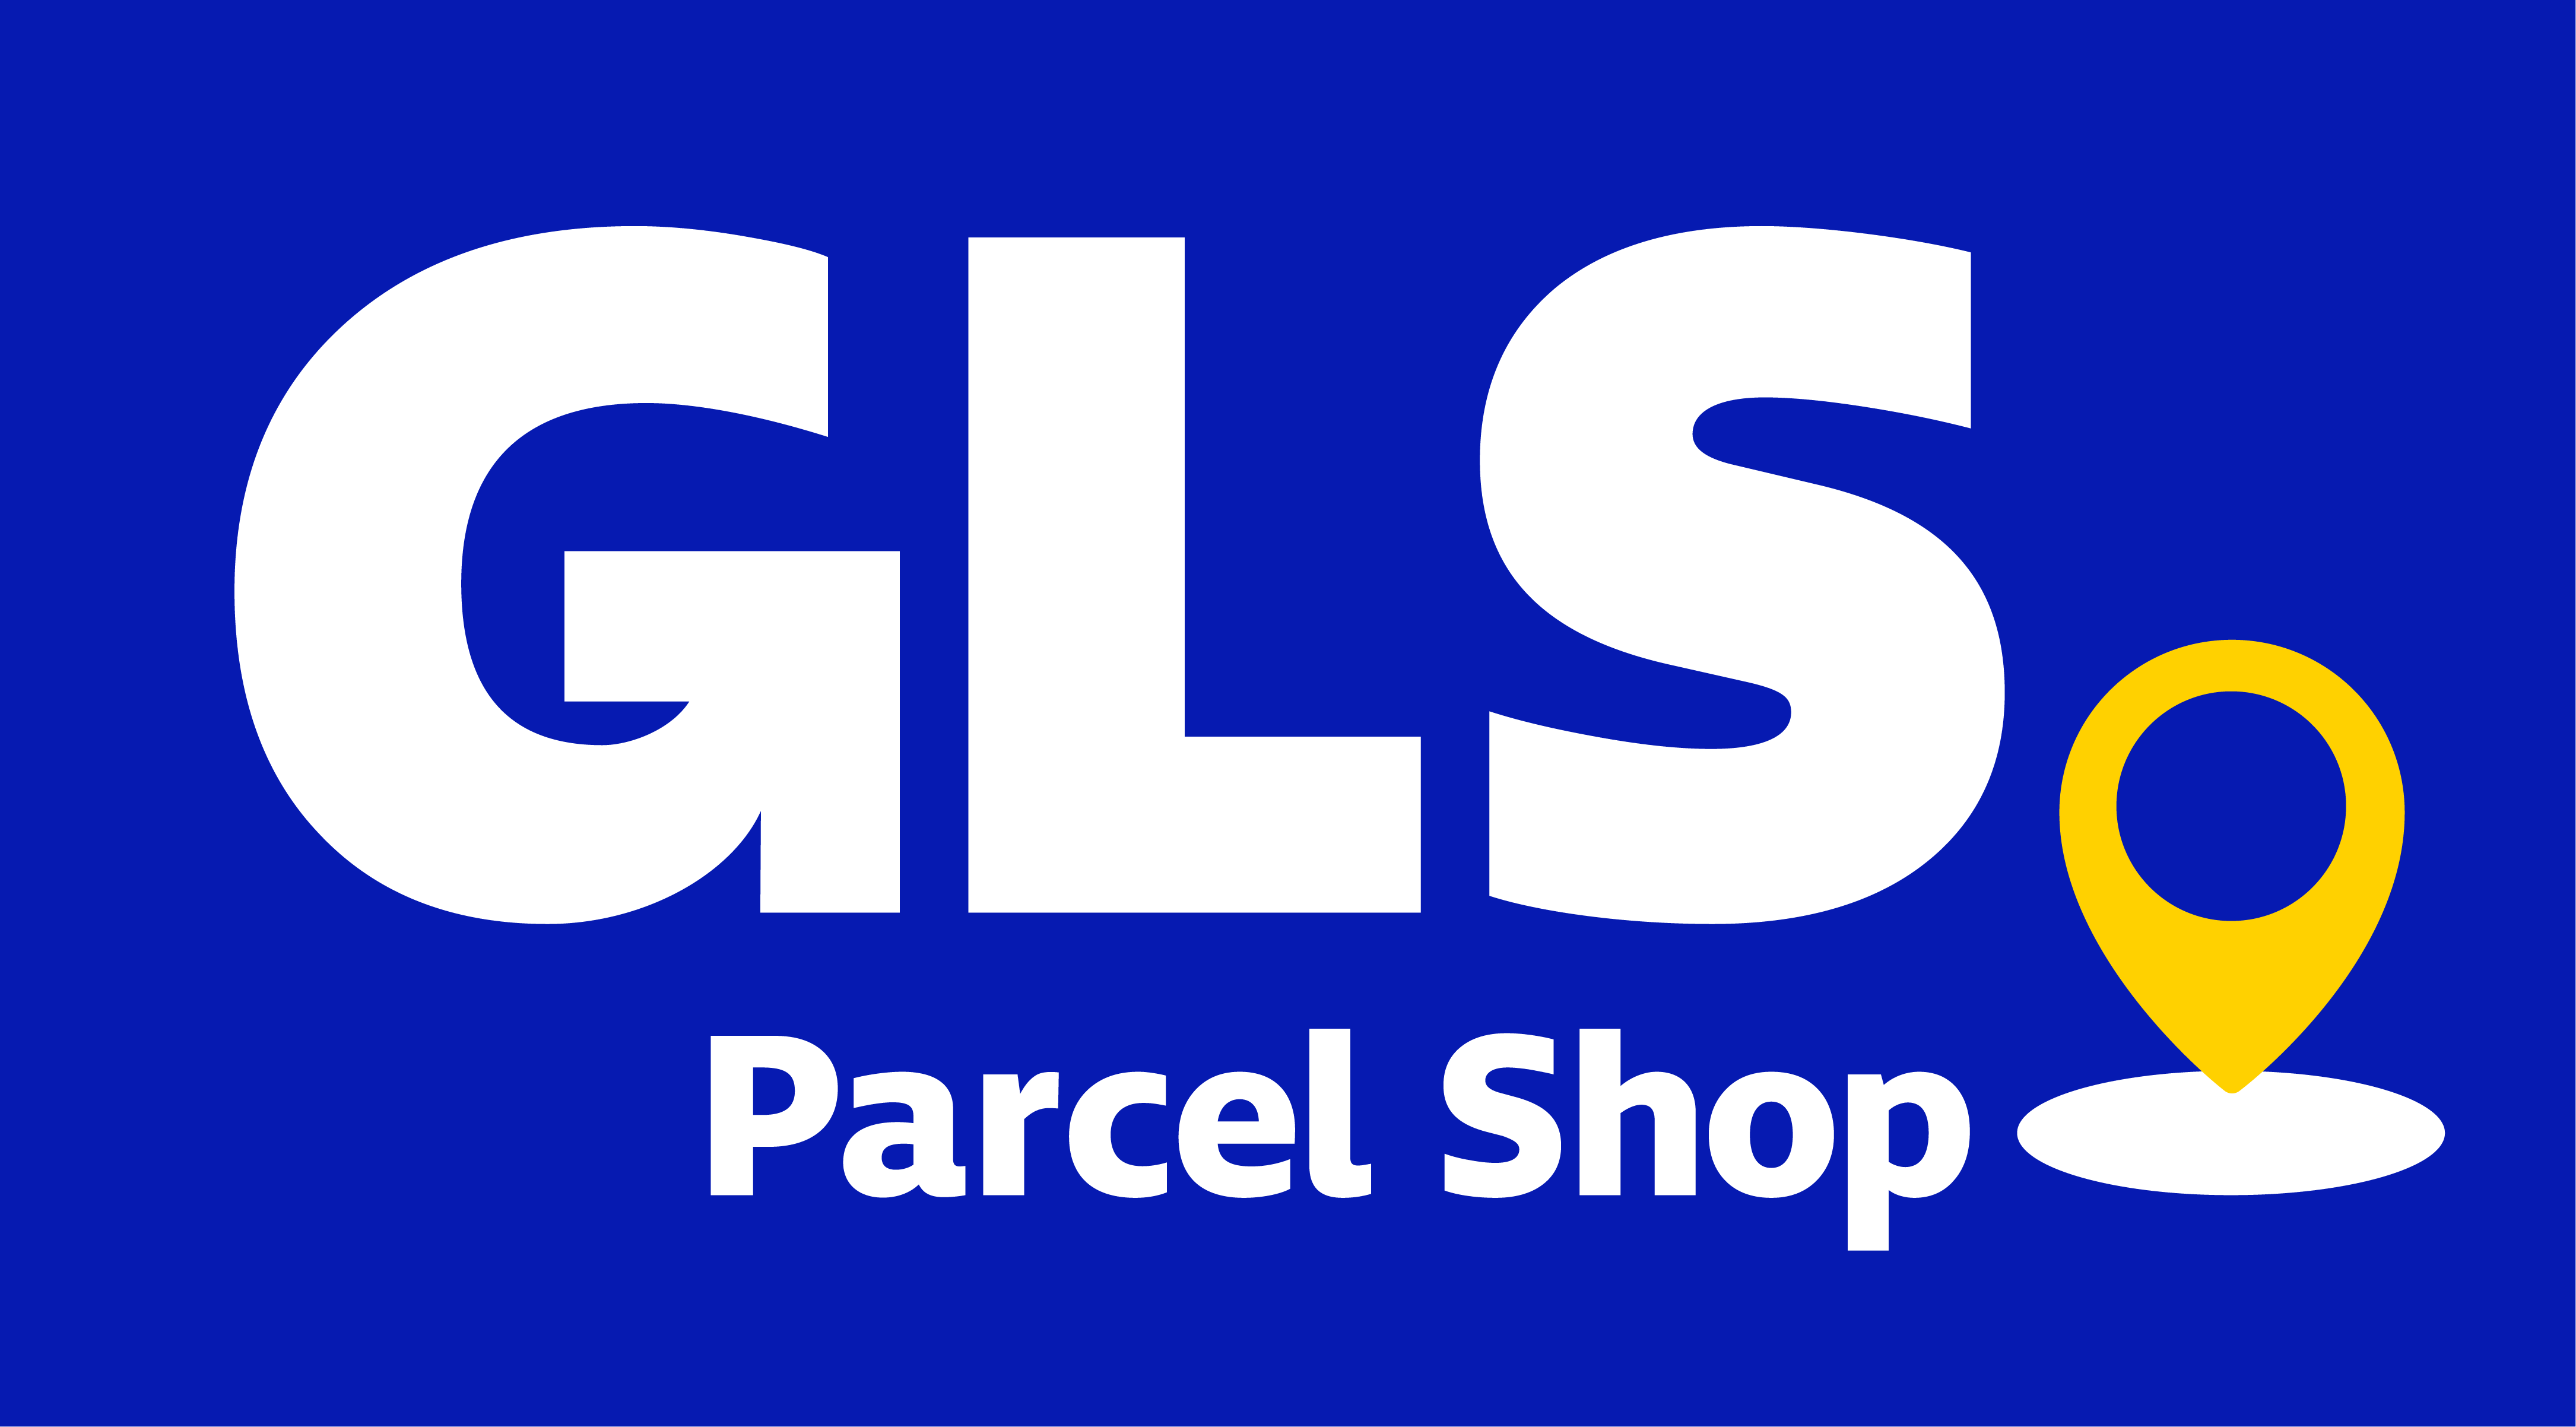 GLS Parcel Shop | GLS Netherlands